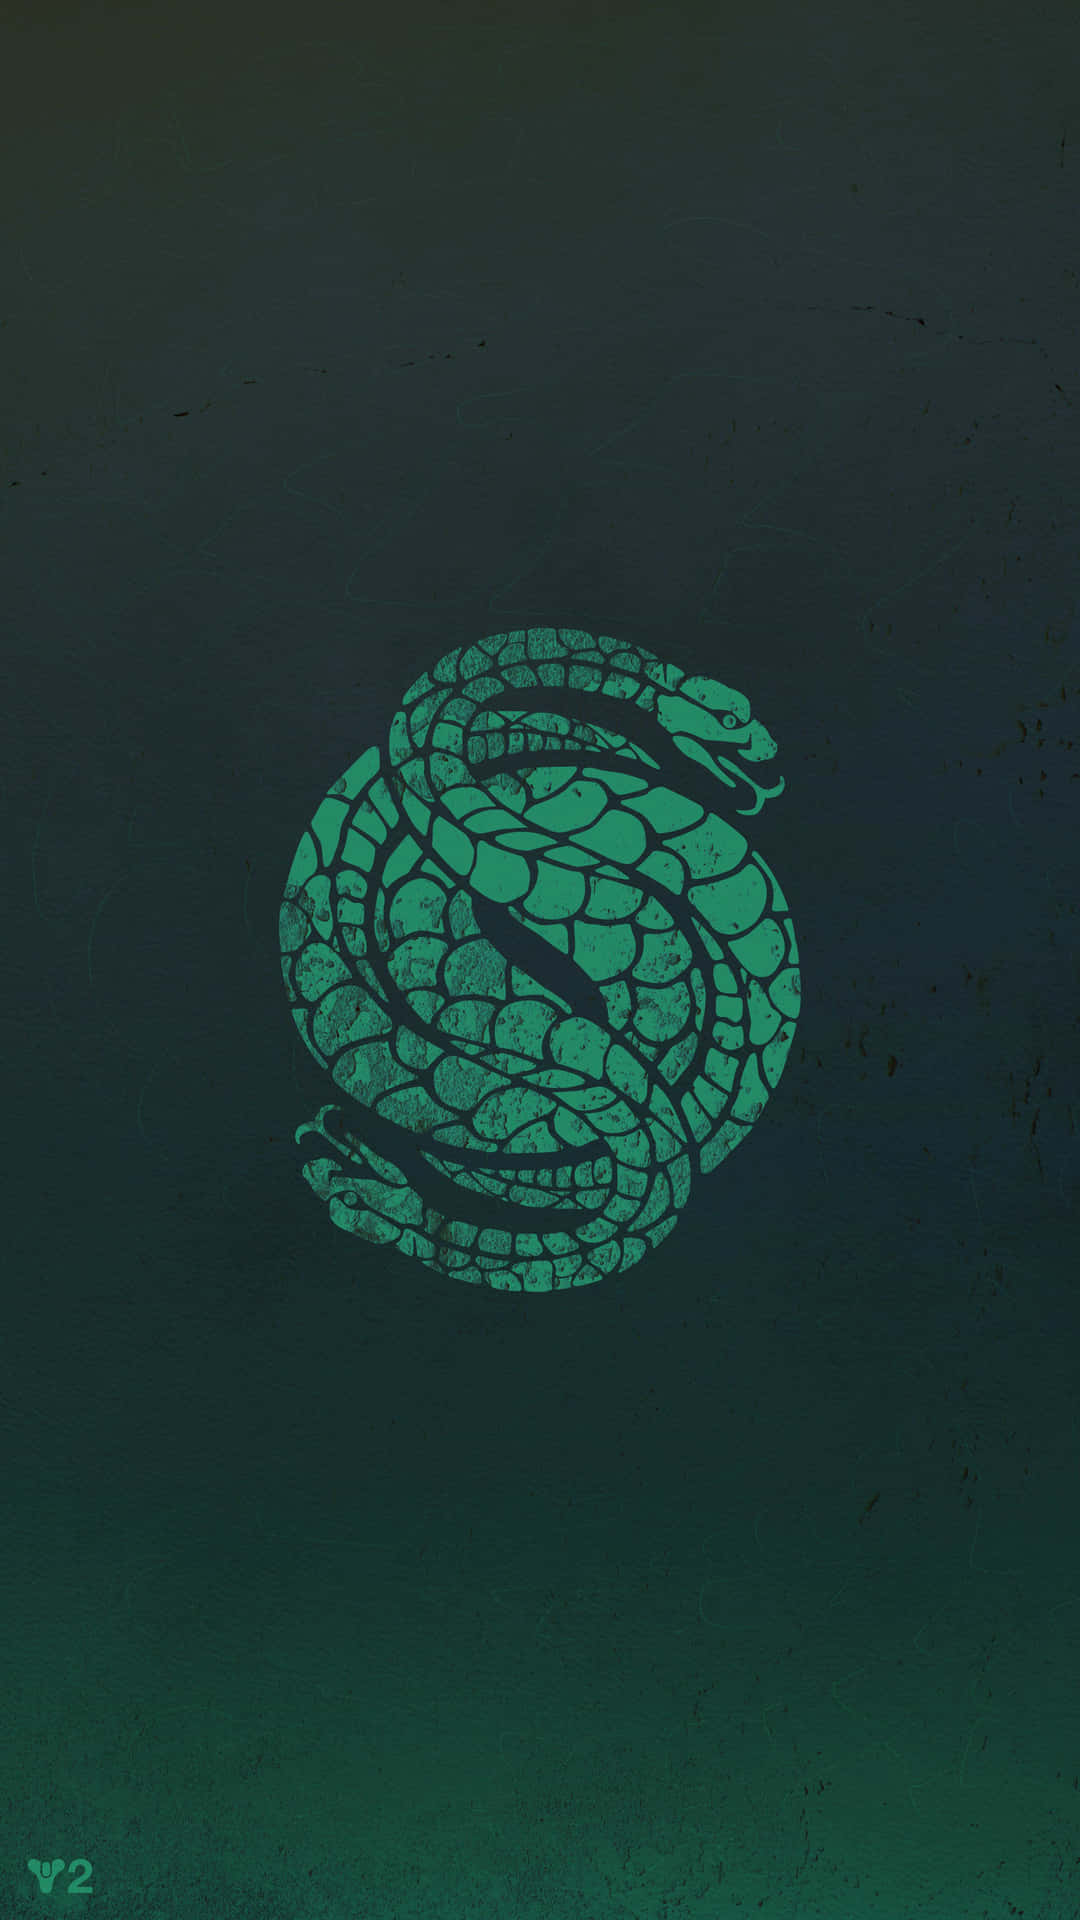 Gambitschlangen Destiny 2 Logo Wallpaper